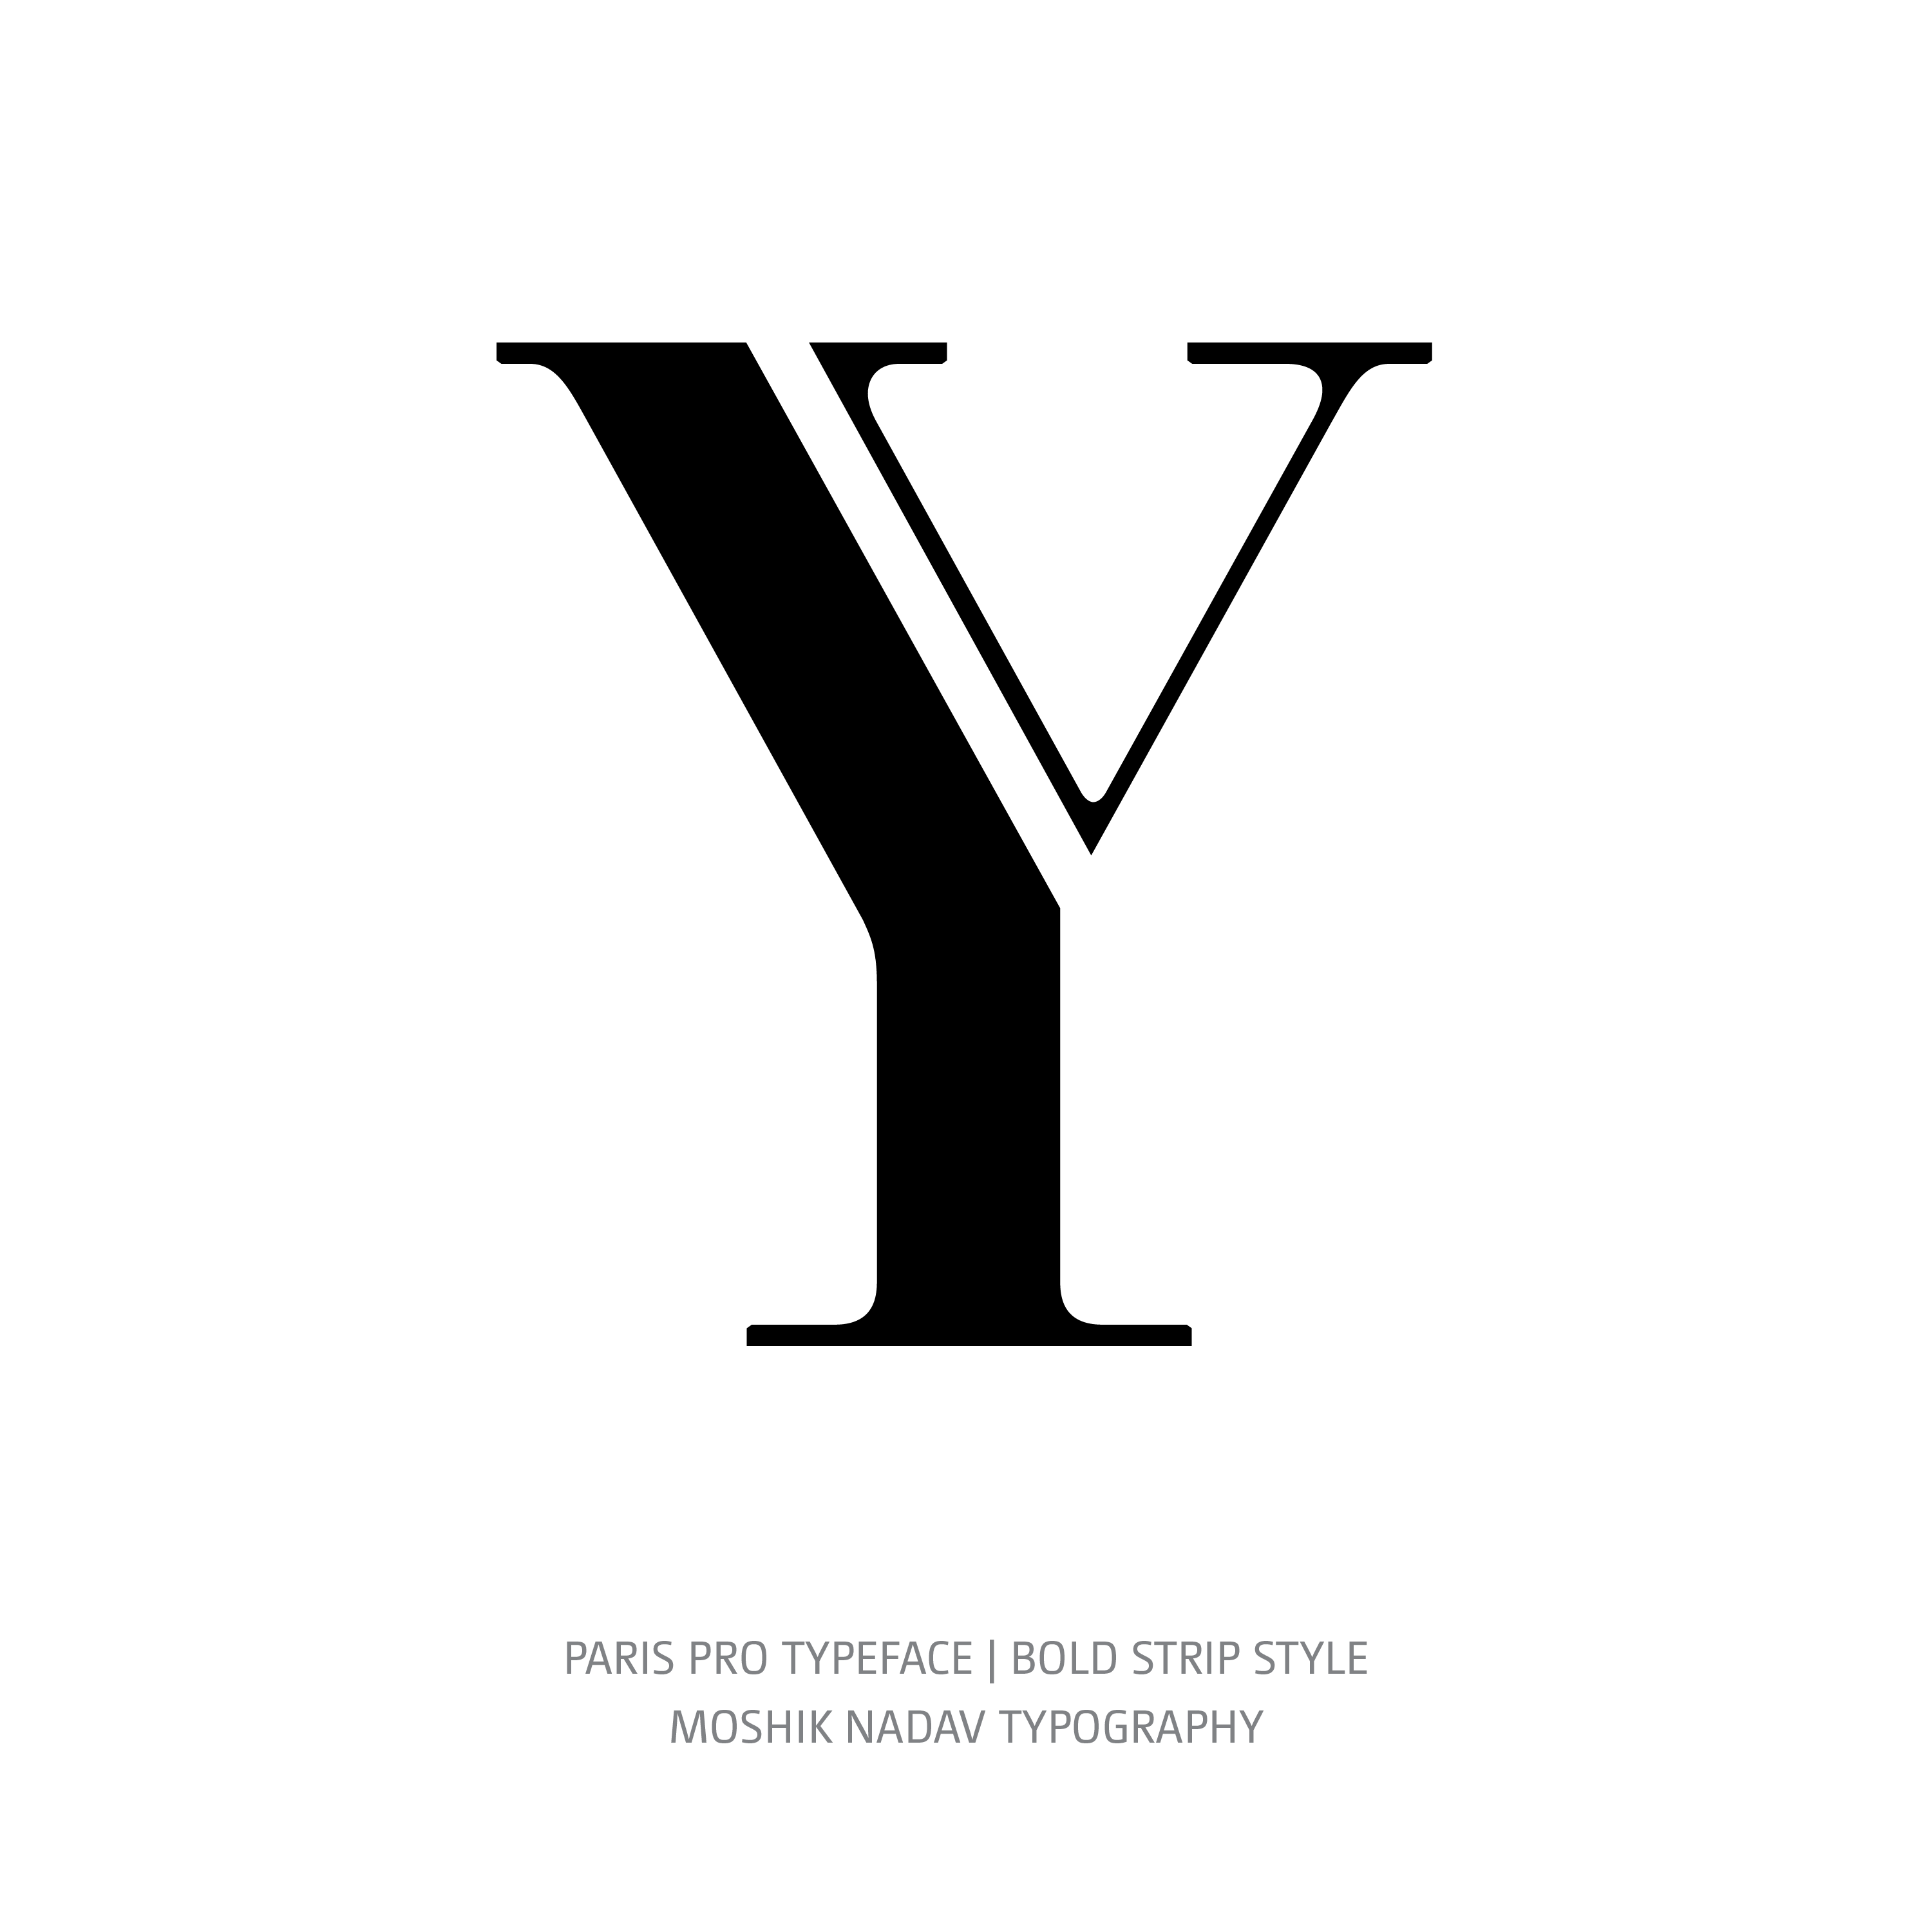 Paris Pro Typeface Bold Strip Y